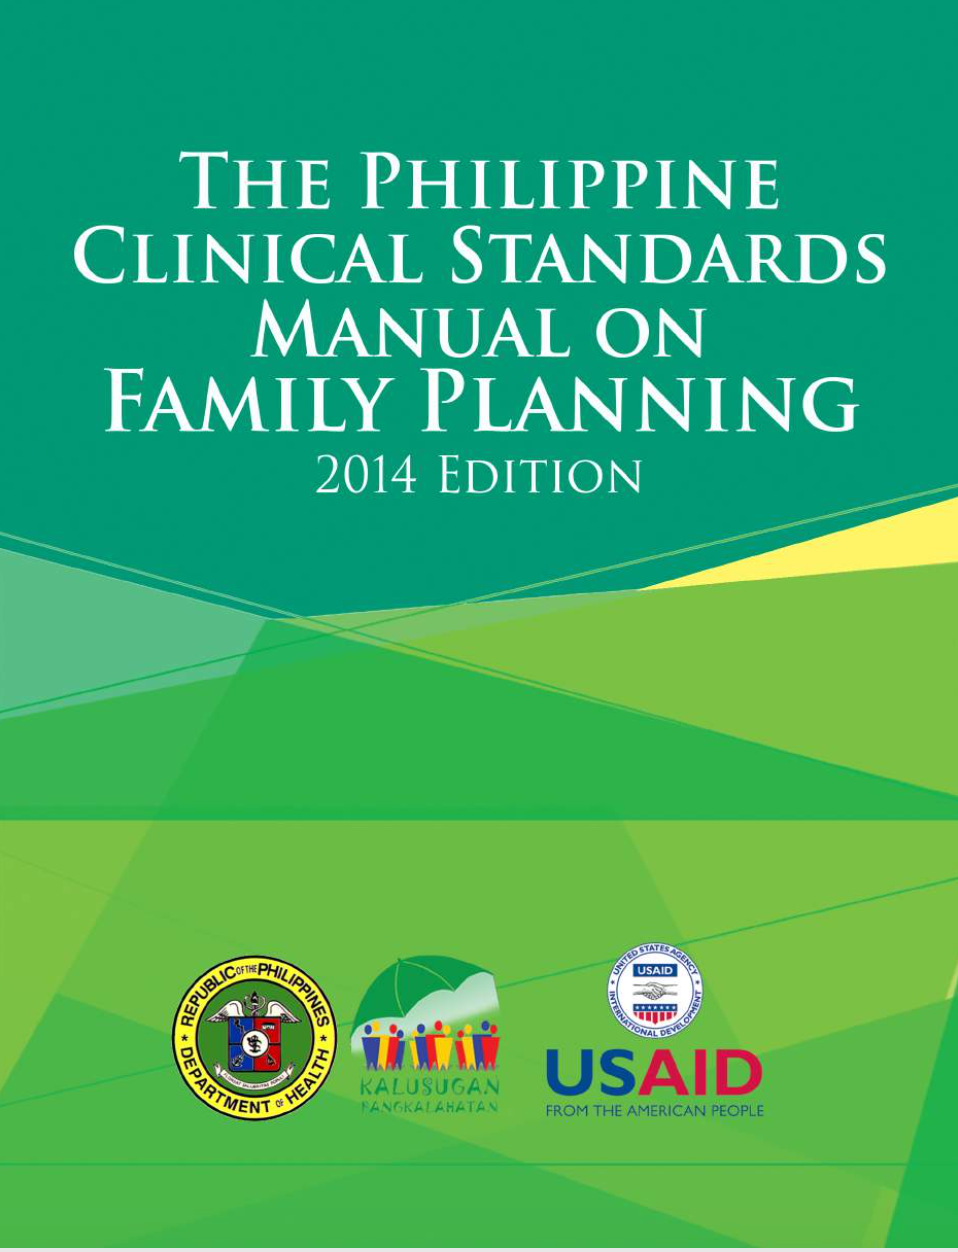 परिवार नियोजन पर फिलीपीन नैदानिक मानक मैनुअल